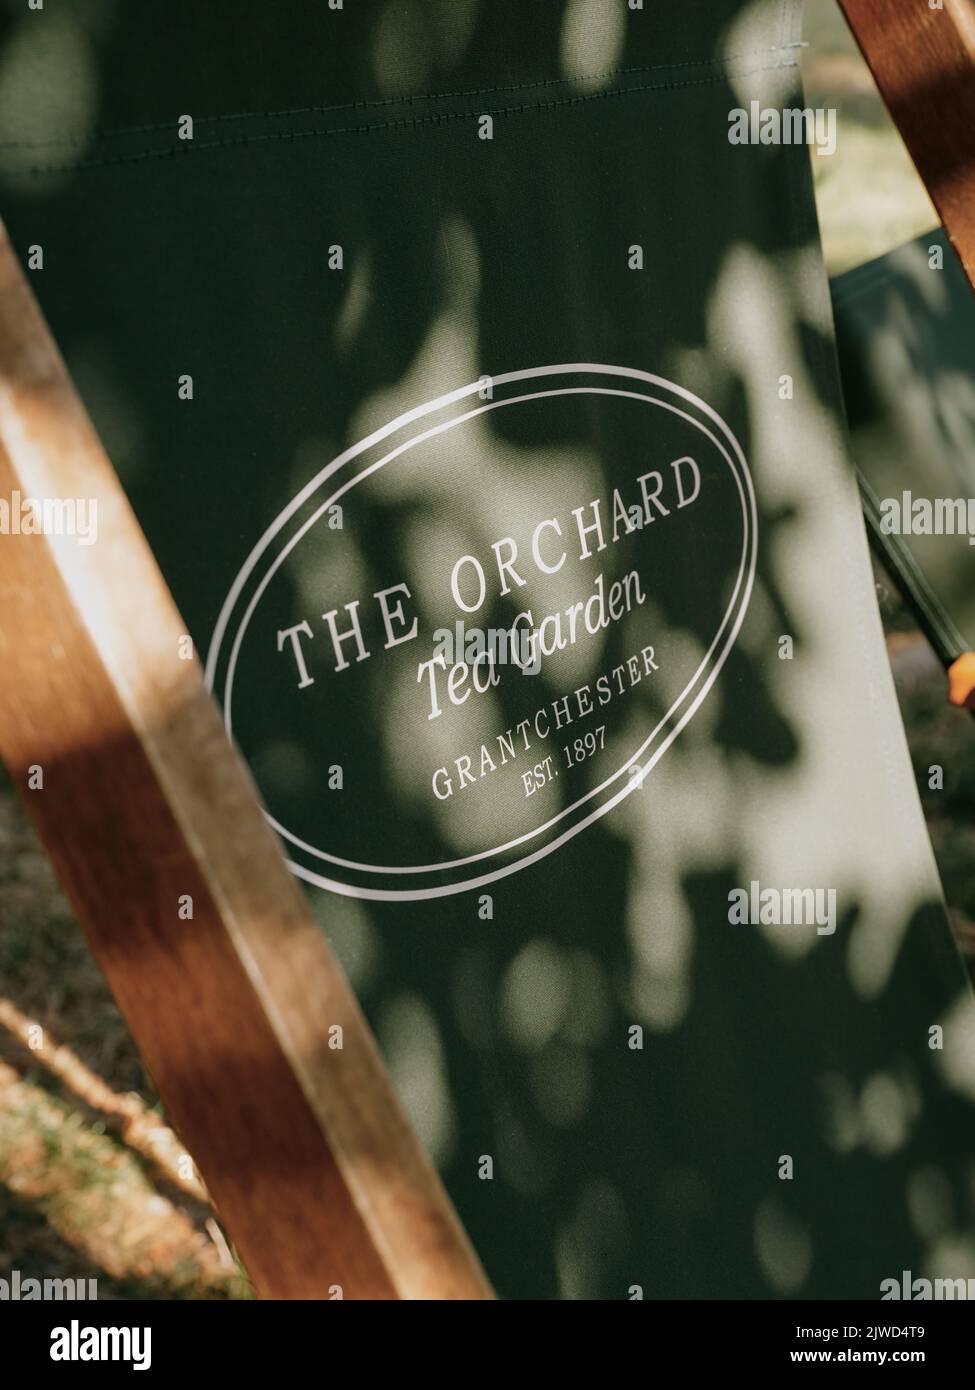 Siège extérieur Orchard Tea Gardens avec logo et éclairage appliqué à Grantchester Cambridge Cambridgeshire Angleterre Banque D'Images